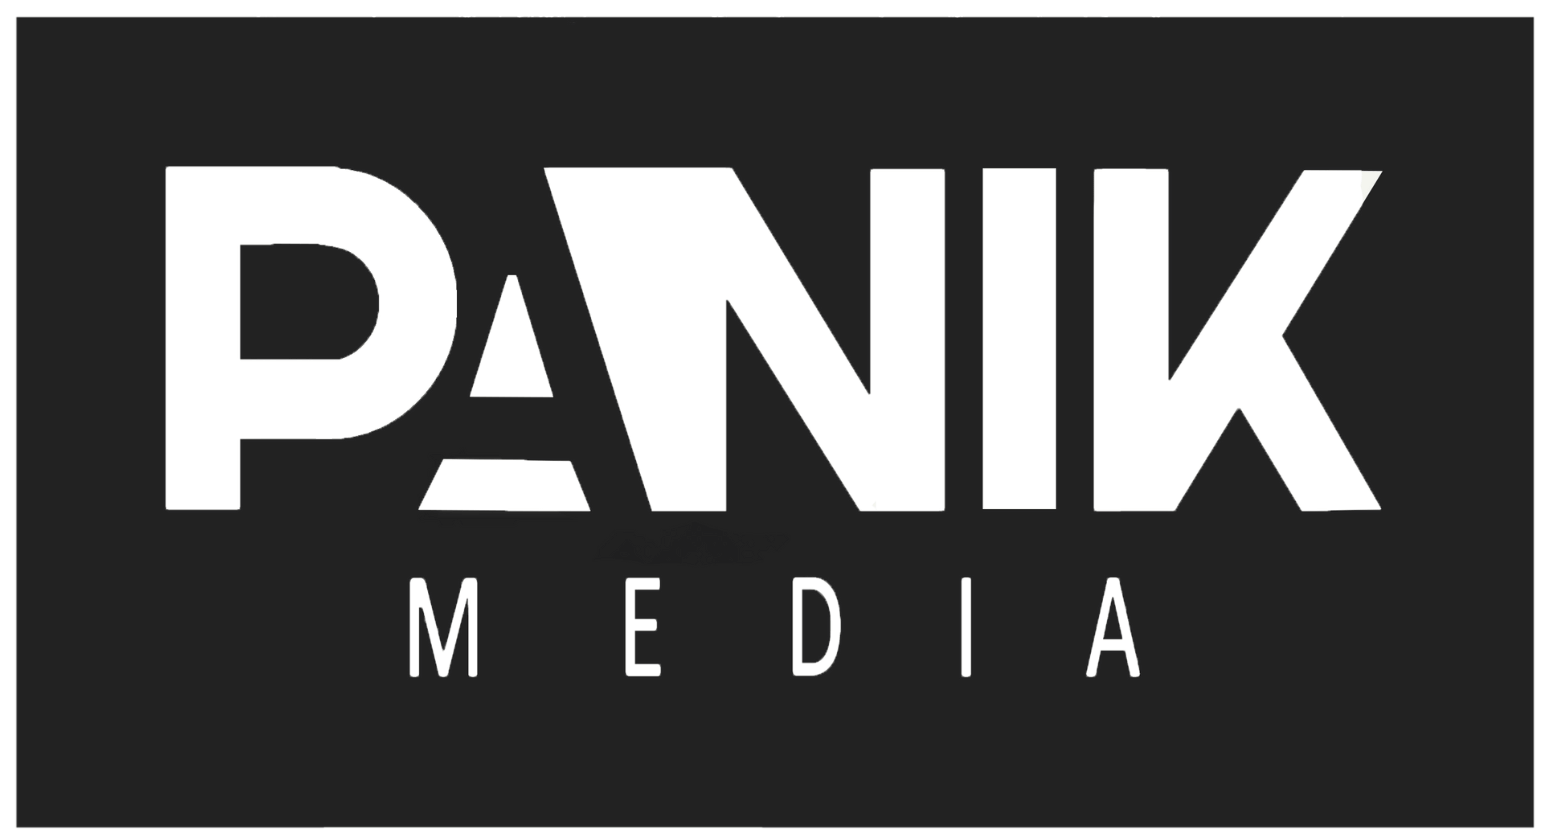 PANIK MEDIA logo black